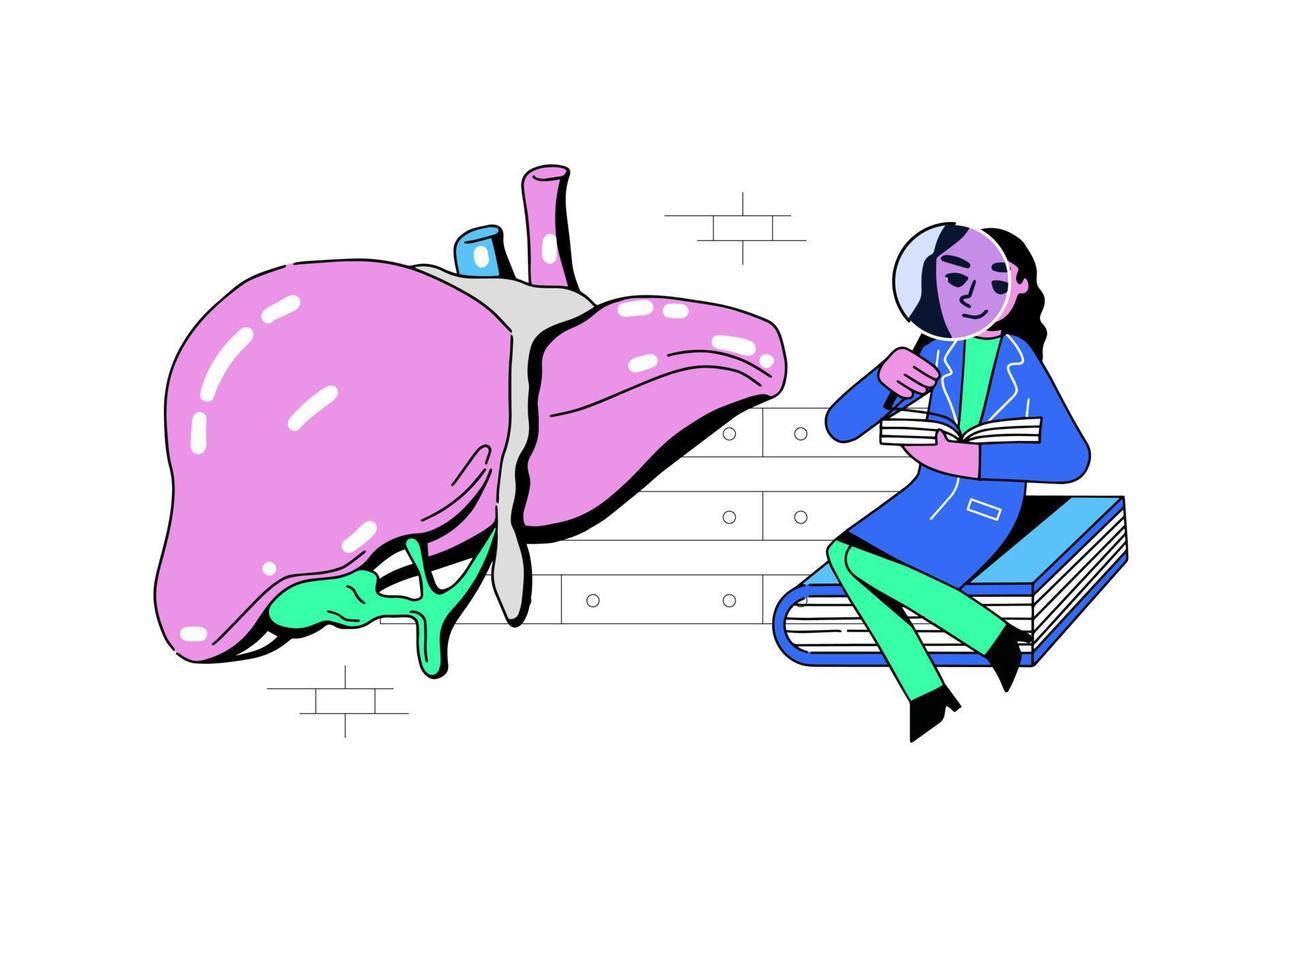 de läkare undersöker de stor lungorna. vektor illustration i nybrutalism stil. lungläkare utför forskning på de lungorna. sjuksköterska står och innehar en snapshot skanna